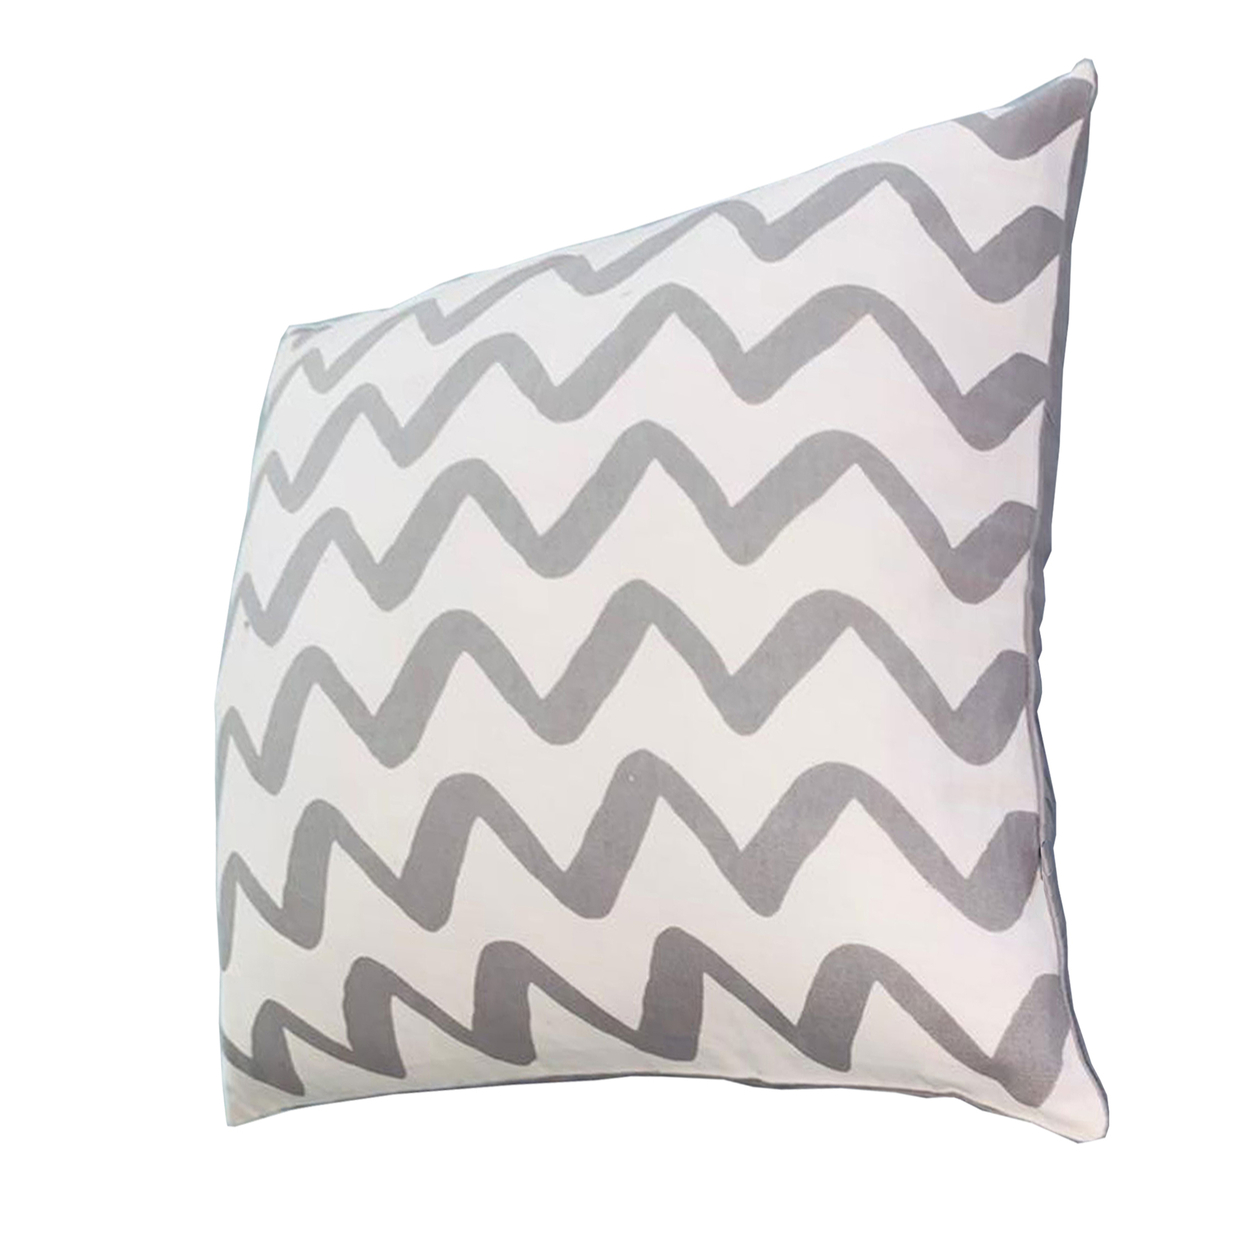 20 X 20 Square Cotton Accent Throw Pillows, Chevron Pattern, Set Of 2, Gray, White